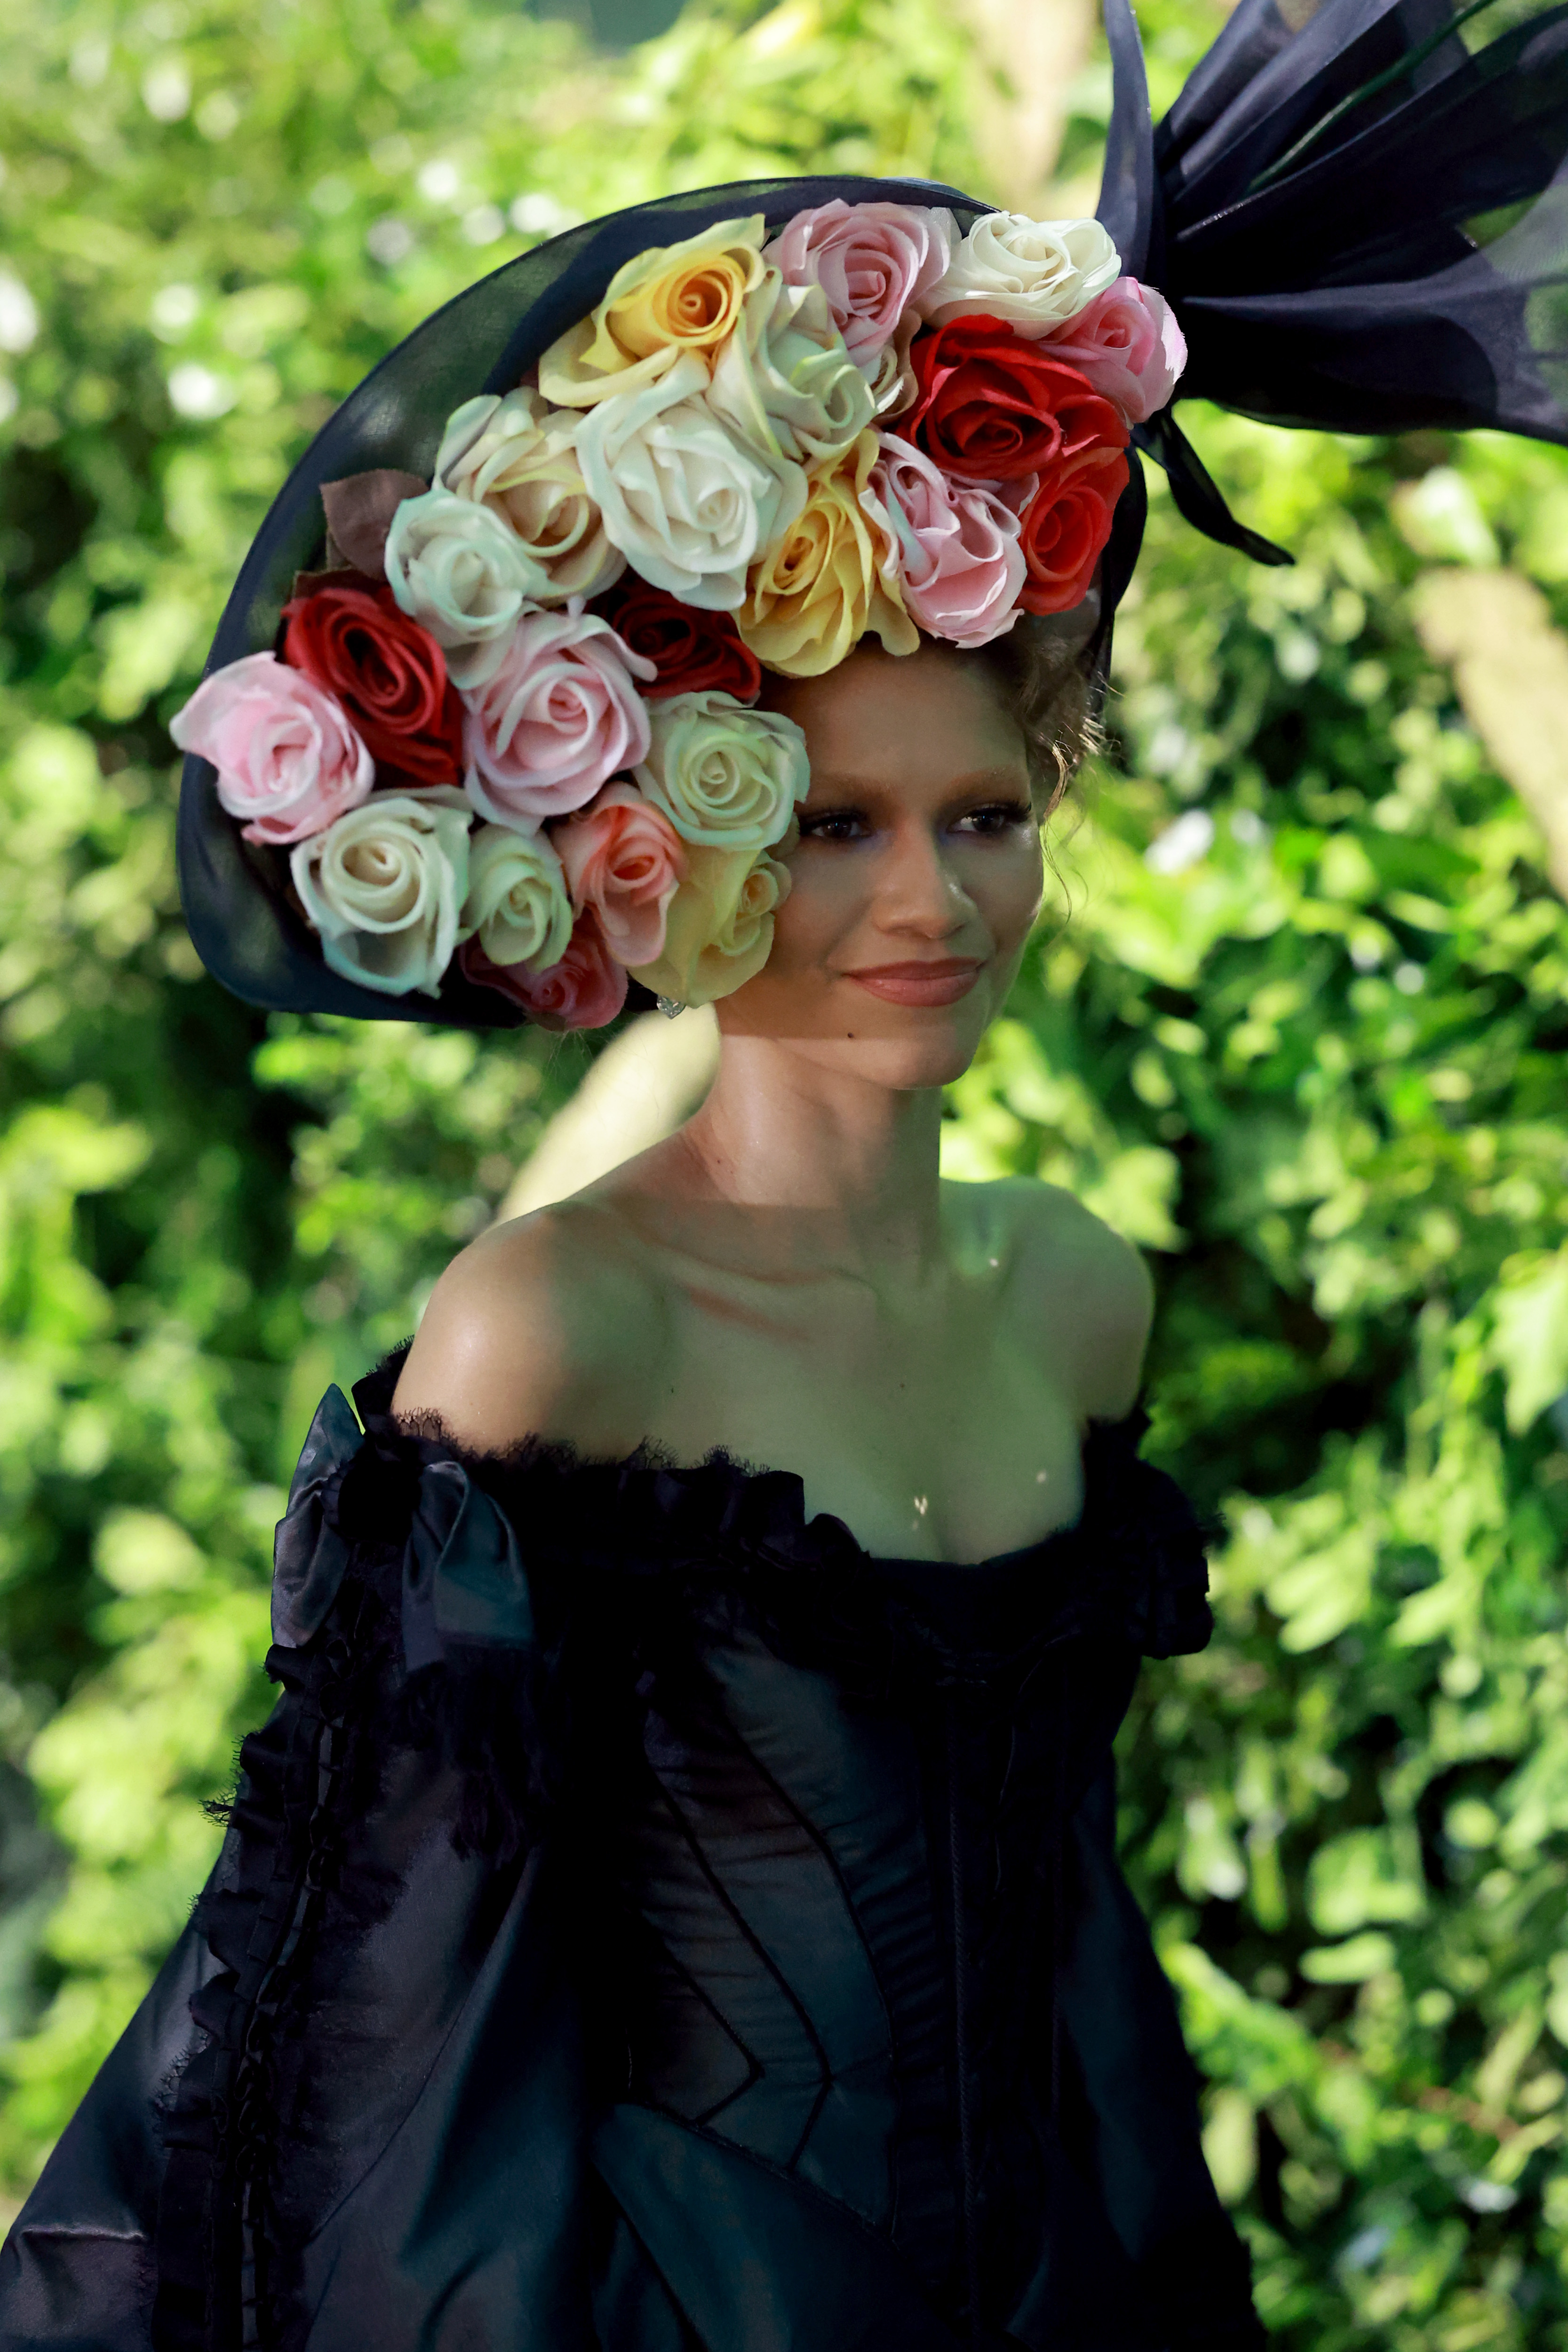 Closeup of Zendaya at the Met Gala with a large floral headpiece